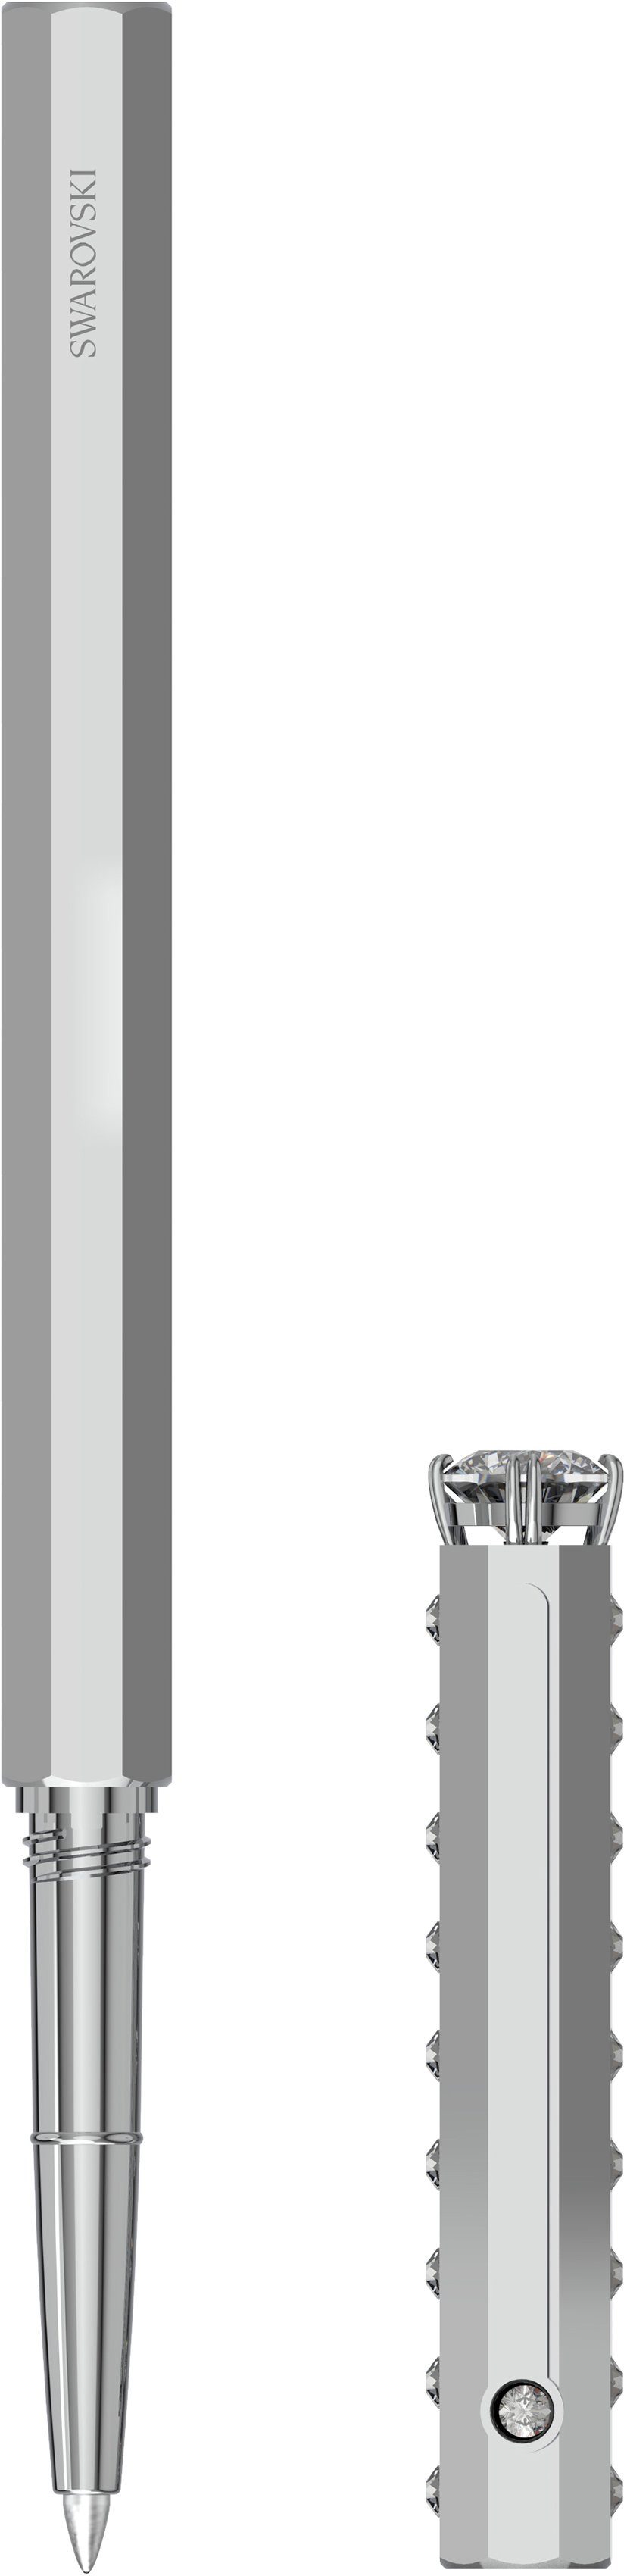 Swarovski Kugelschreiber Klassisch, 5627168, 5631210, 5631209, Swarovski® mit metallfarben-kristallweiß 5634417, Kristallen